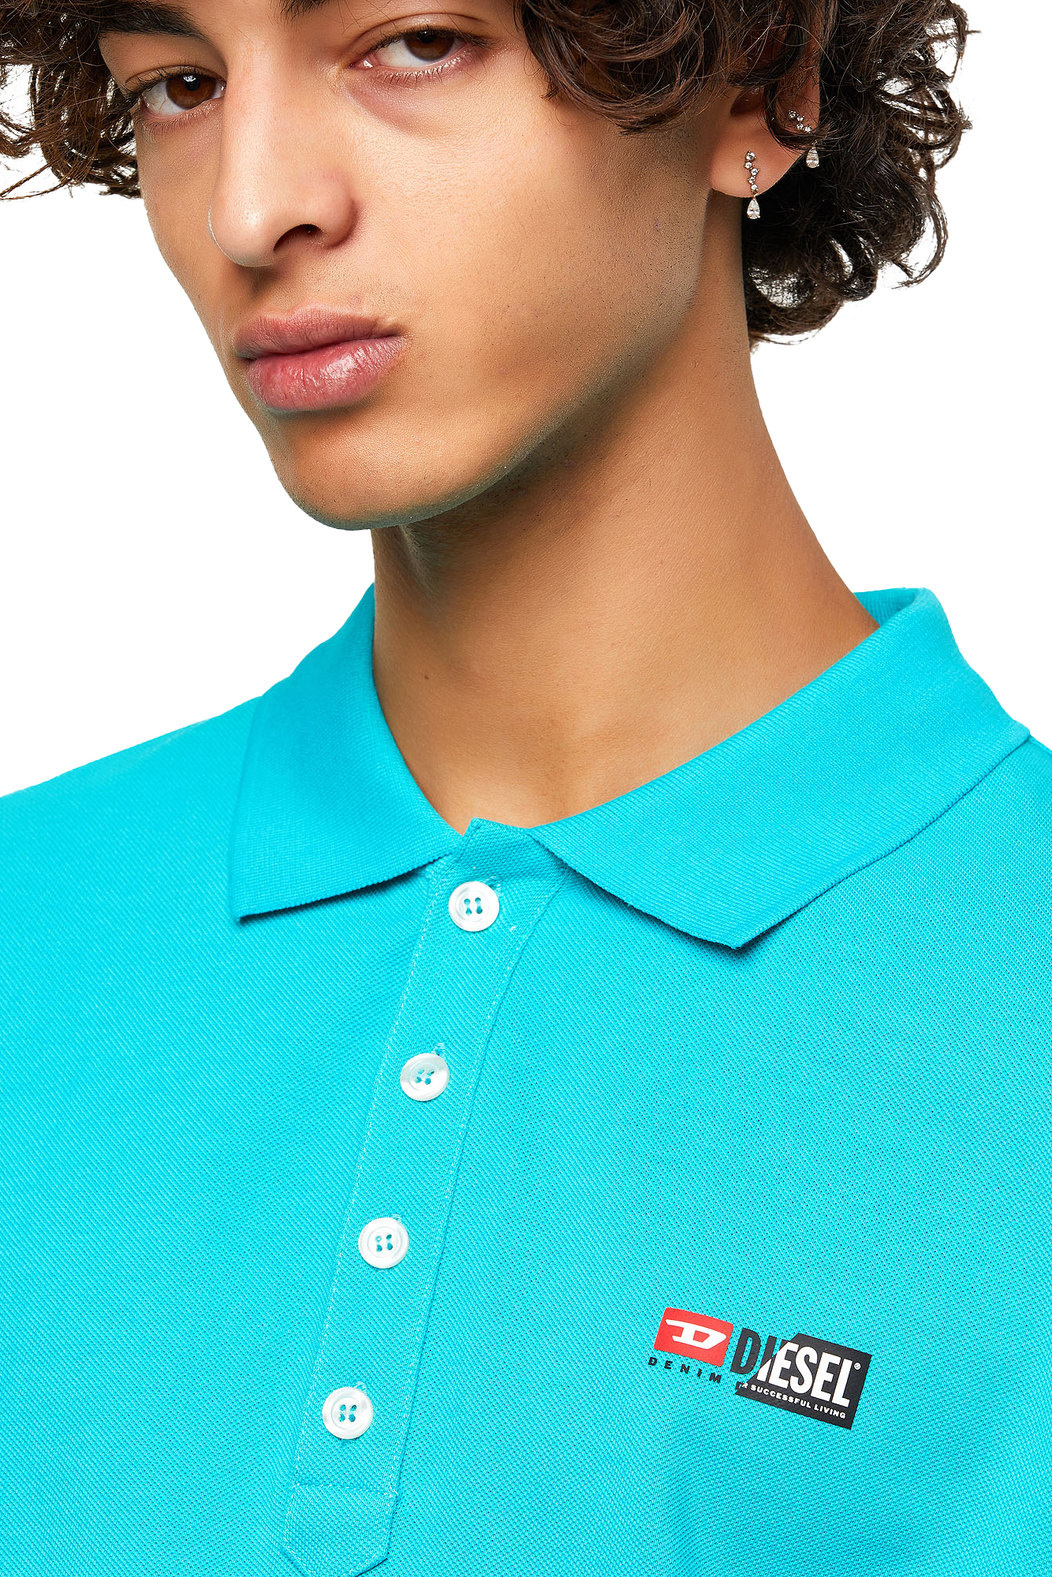 Pique polo shirt with double logo